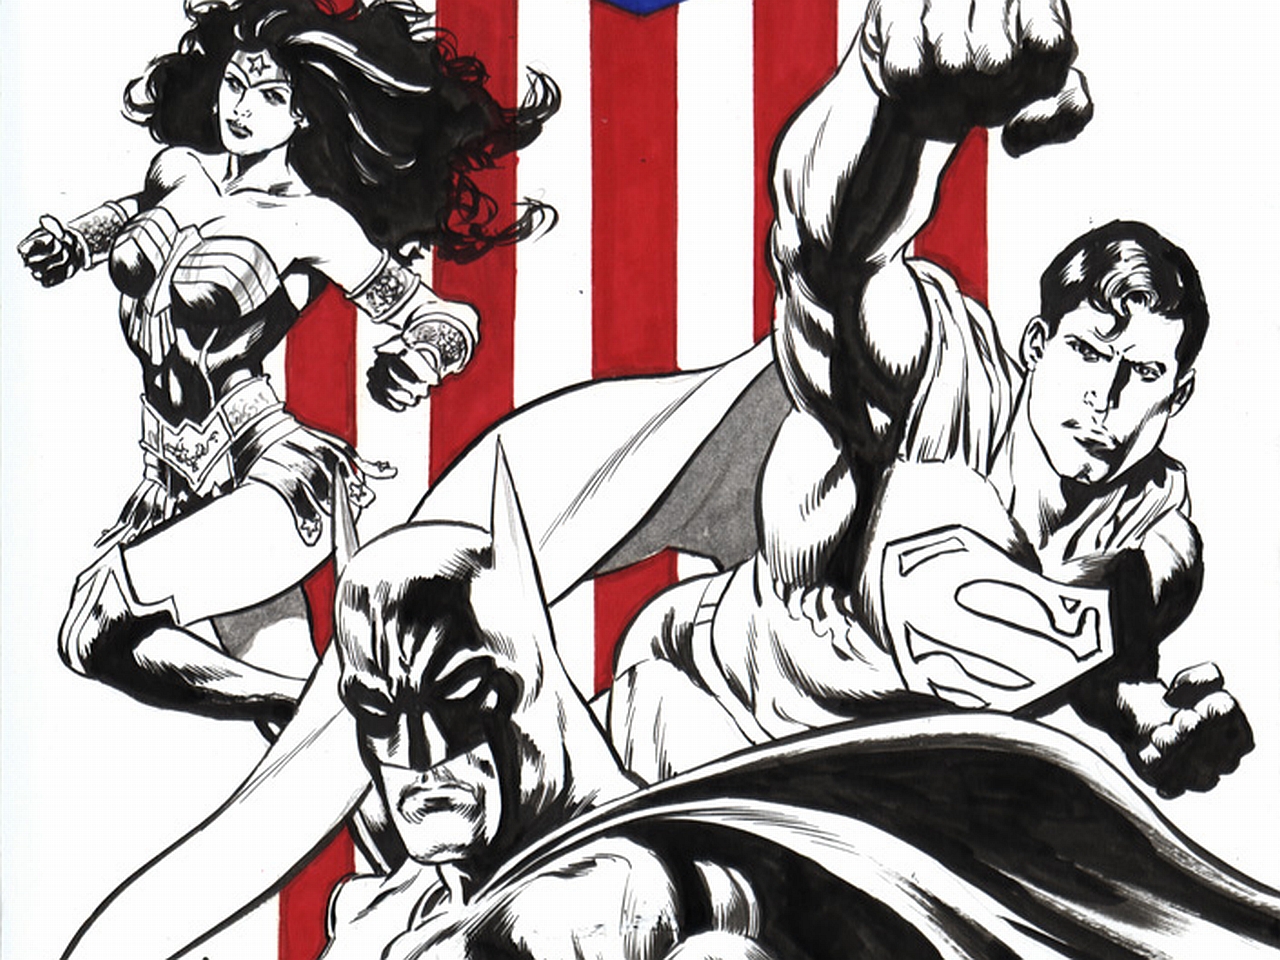 Скачать обои бесплатно Комиксы, Бэтмен, Комиксы Dc, Супермен, Лига Справедливости, Удивительная Женщина картинка на рабочий стол ПК